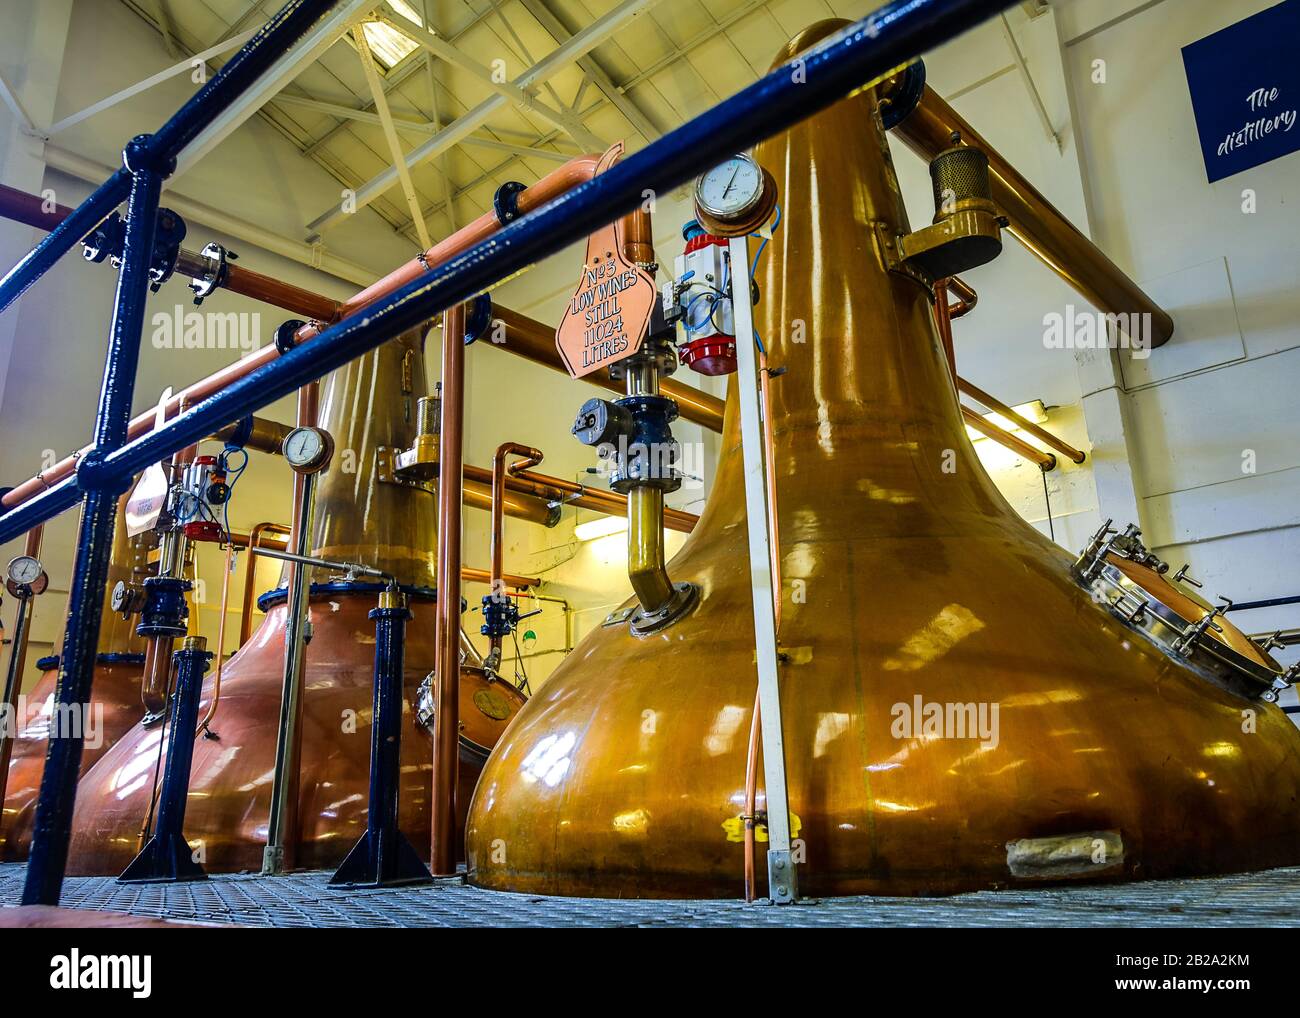 Schottland, GROSSBRITANNIEN - 30. MAI 2019: Traditionelle schottische  Destillerie, die alkoholische Getränke herstellt Stockfotografie - Alamy